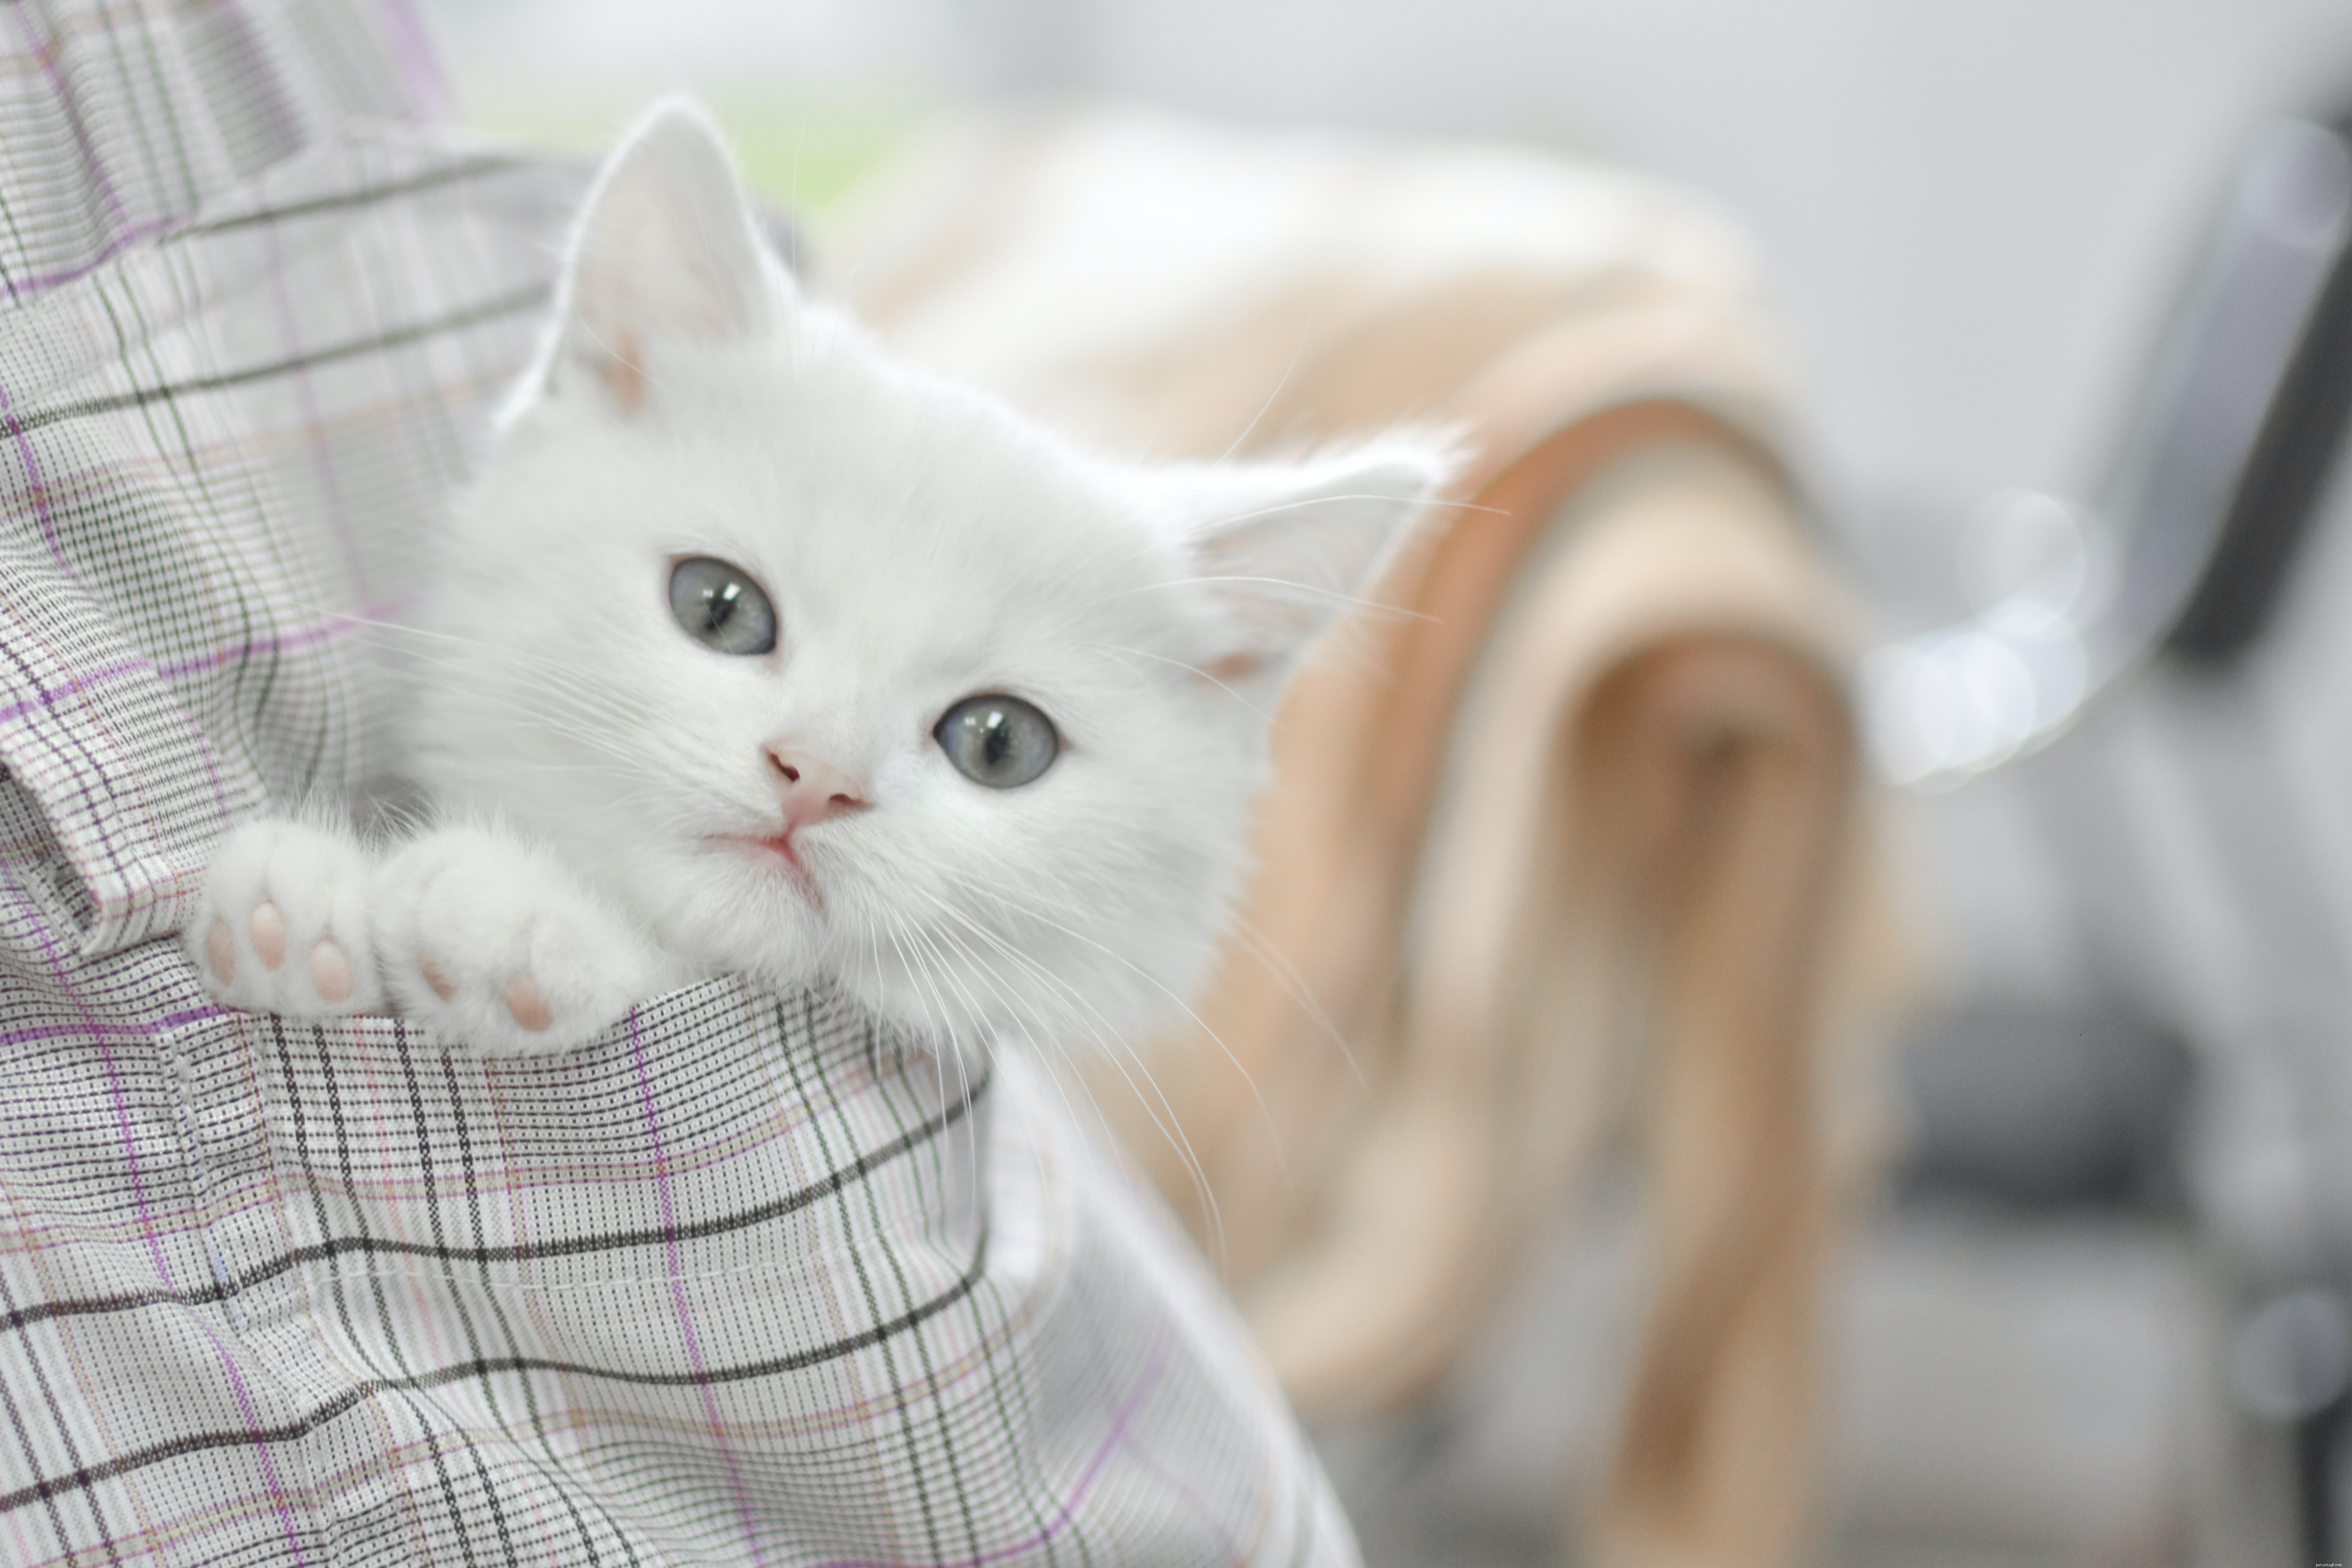 Co je lepší – adoptovat si kočku nebo koupit kotě?